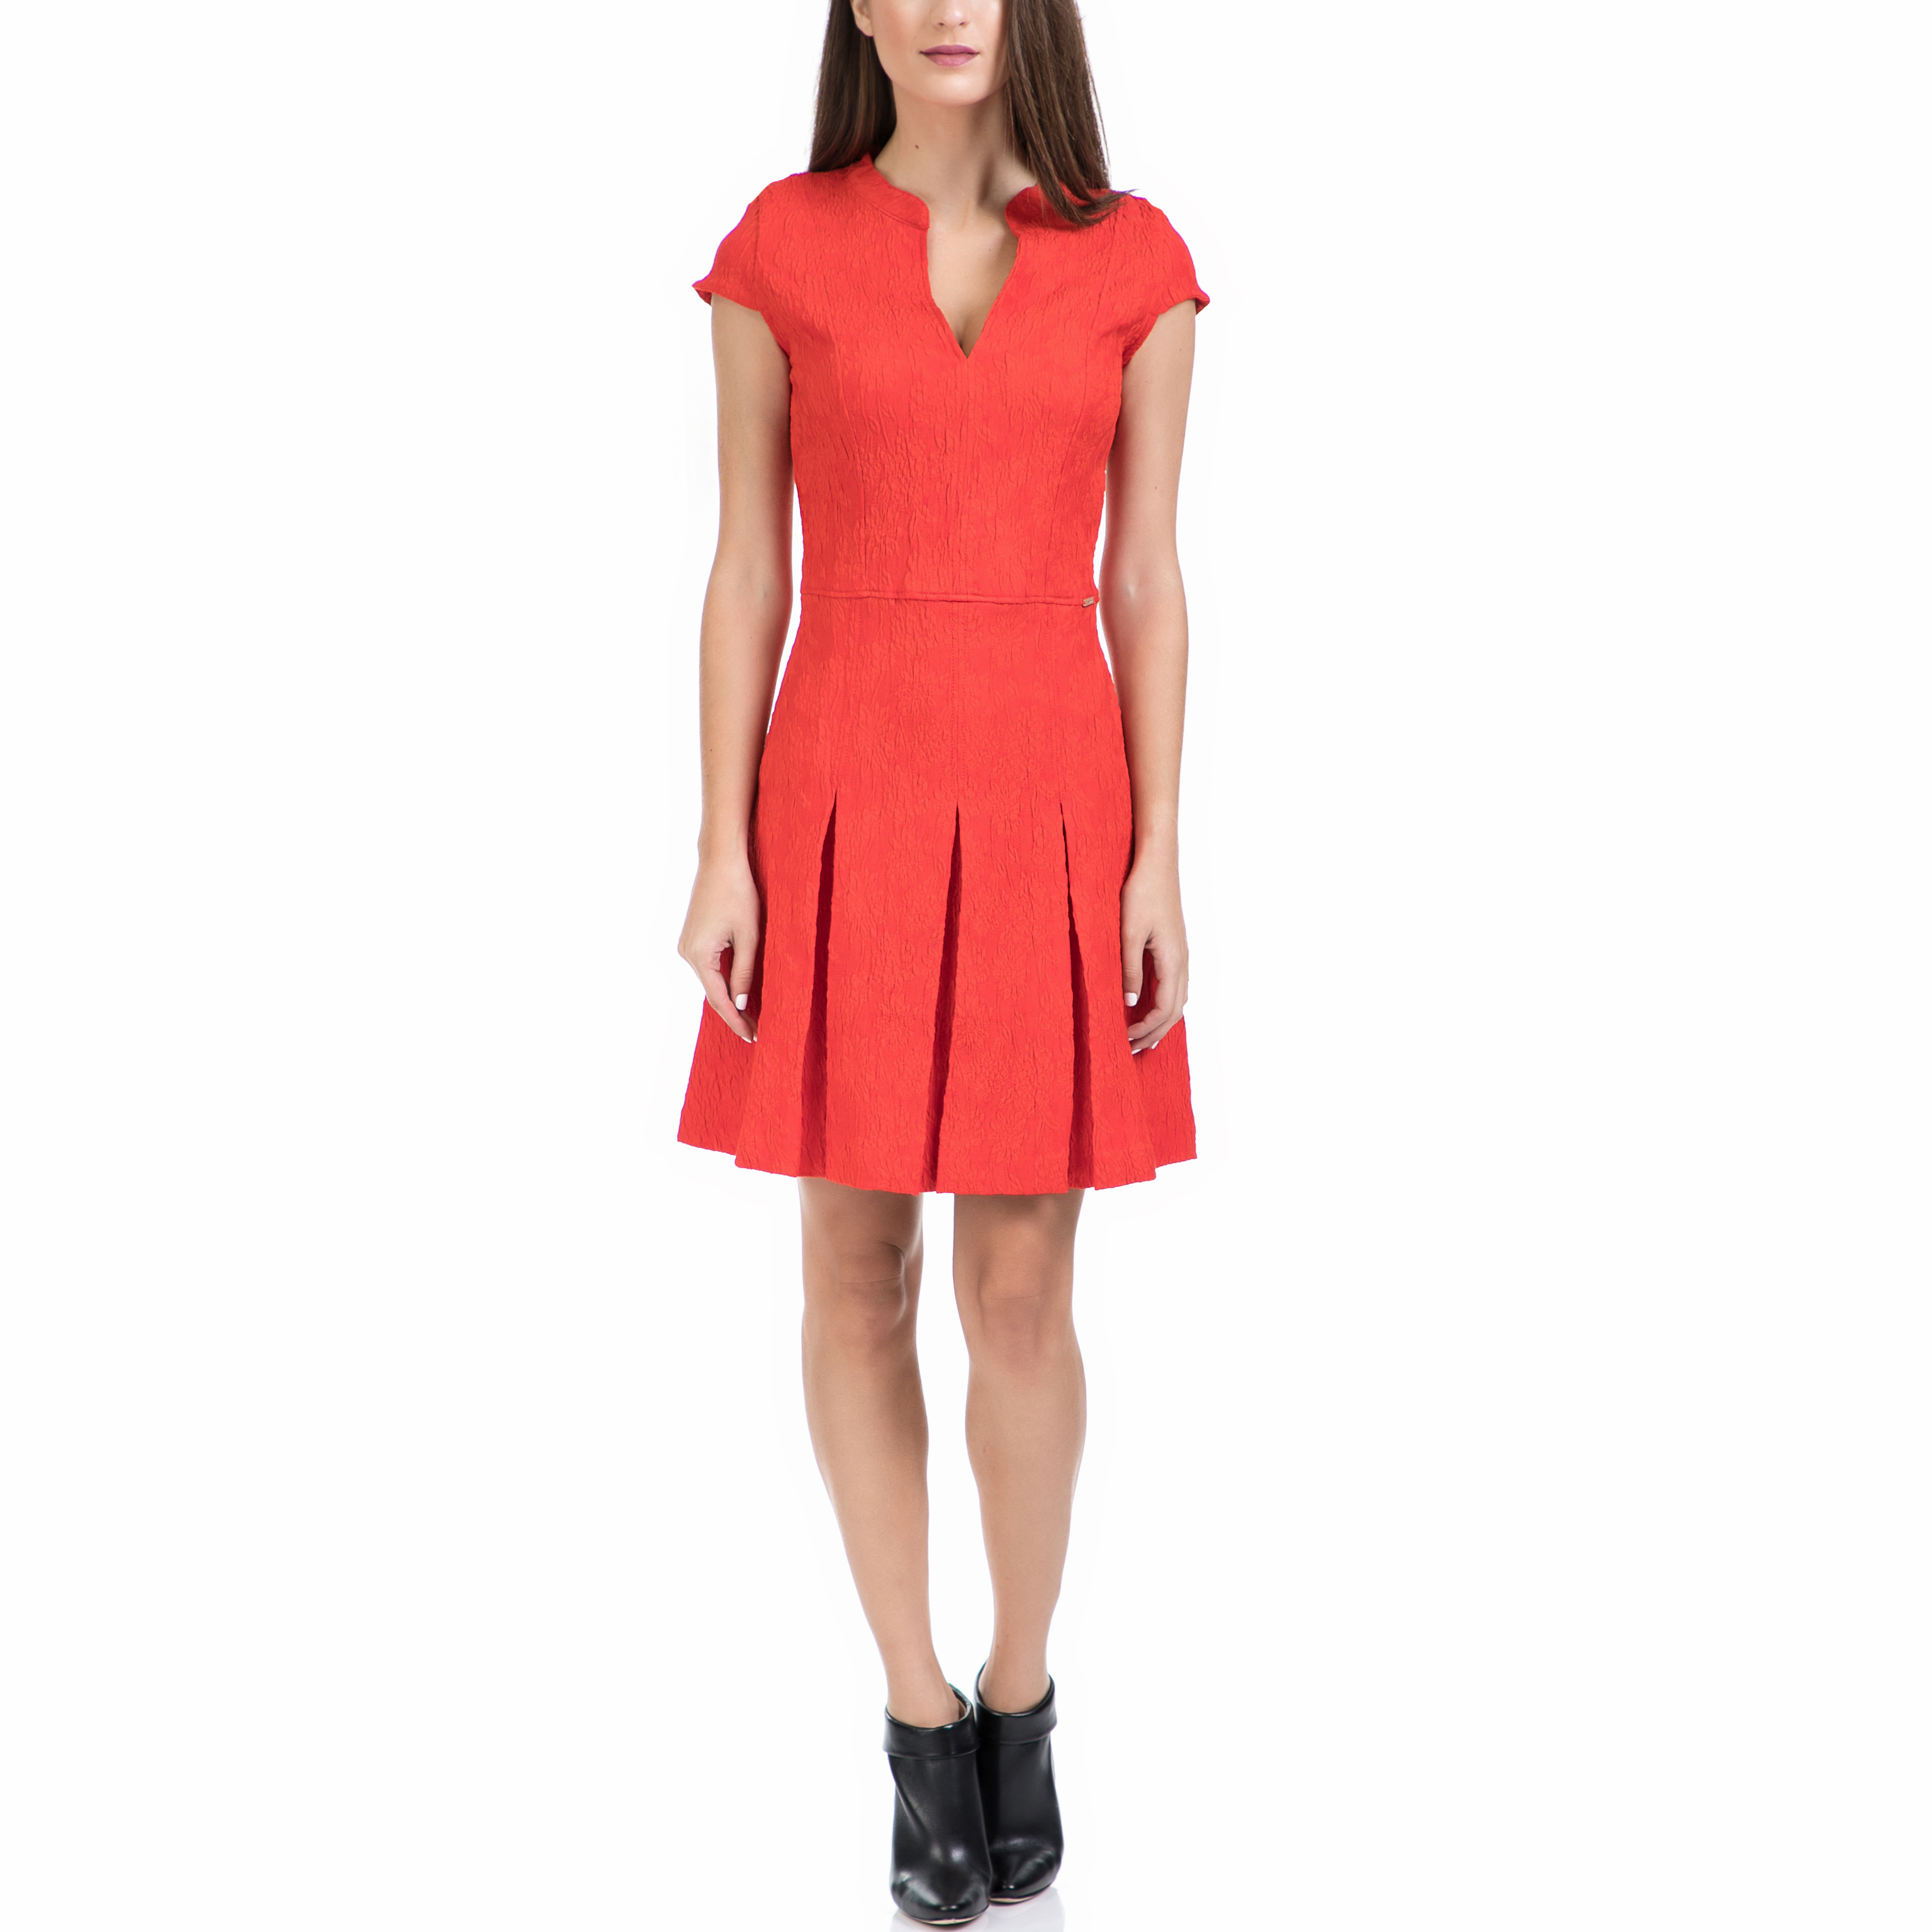 Γυναικεία/Ρούχα/Φορέματα/Μίνι GUESS - Γυναικείο φόρεμα GUESS κόκκινο